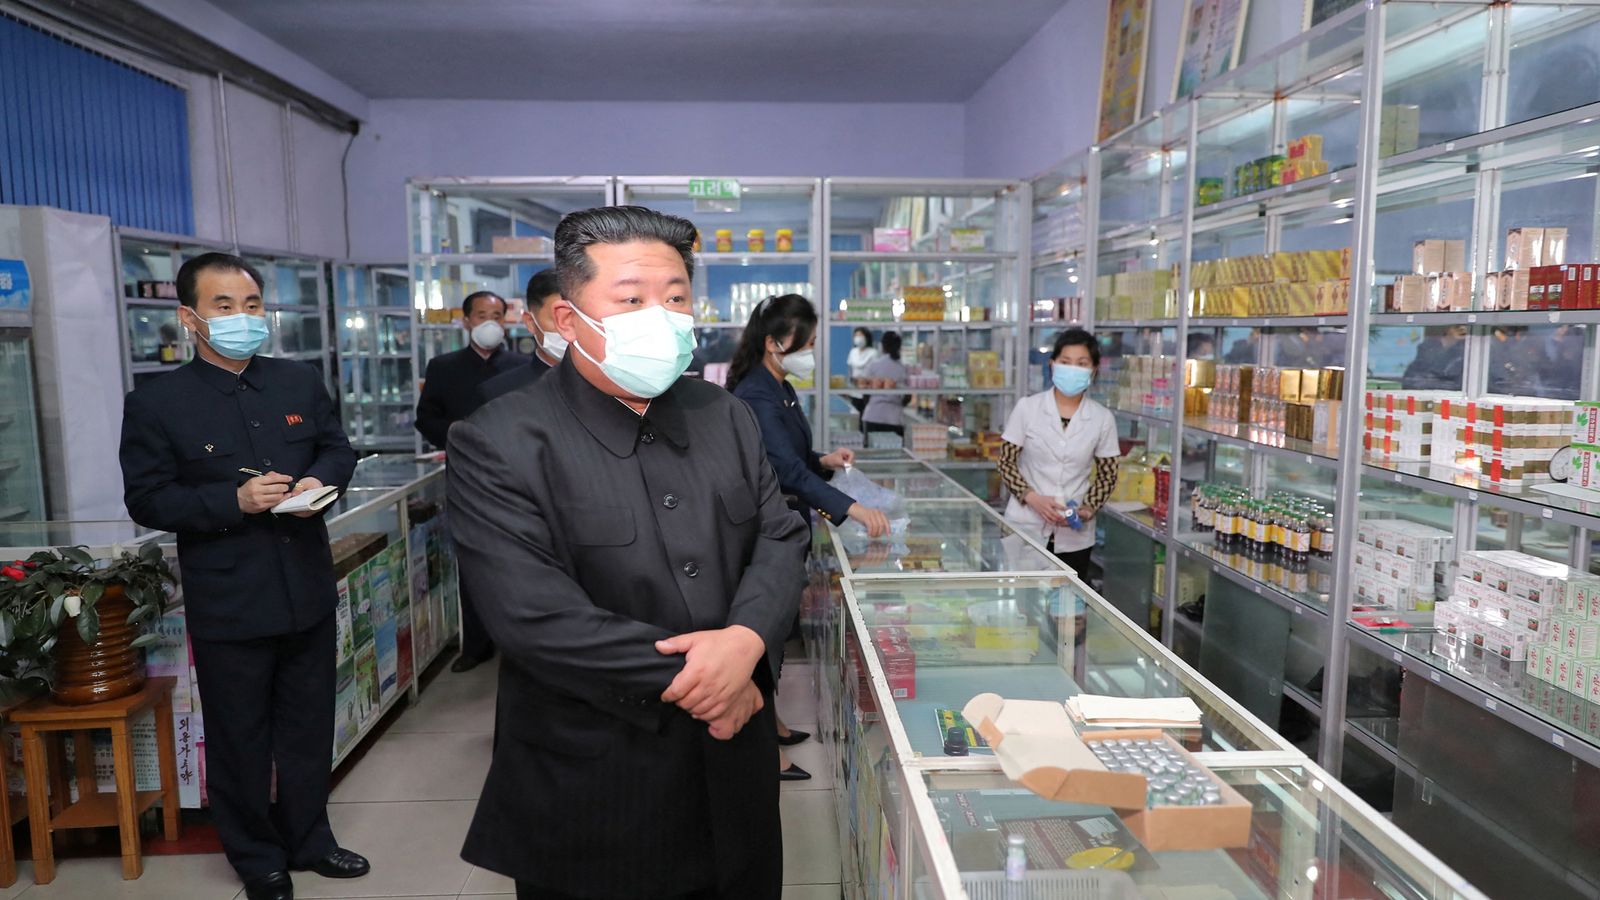 La Corée du Nord affirme avoir identifié la source de l’épidémie de COVID : « des choses extraterrestres » près de la frontière avec la Corée du Sud |  Nouvelles du monde